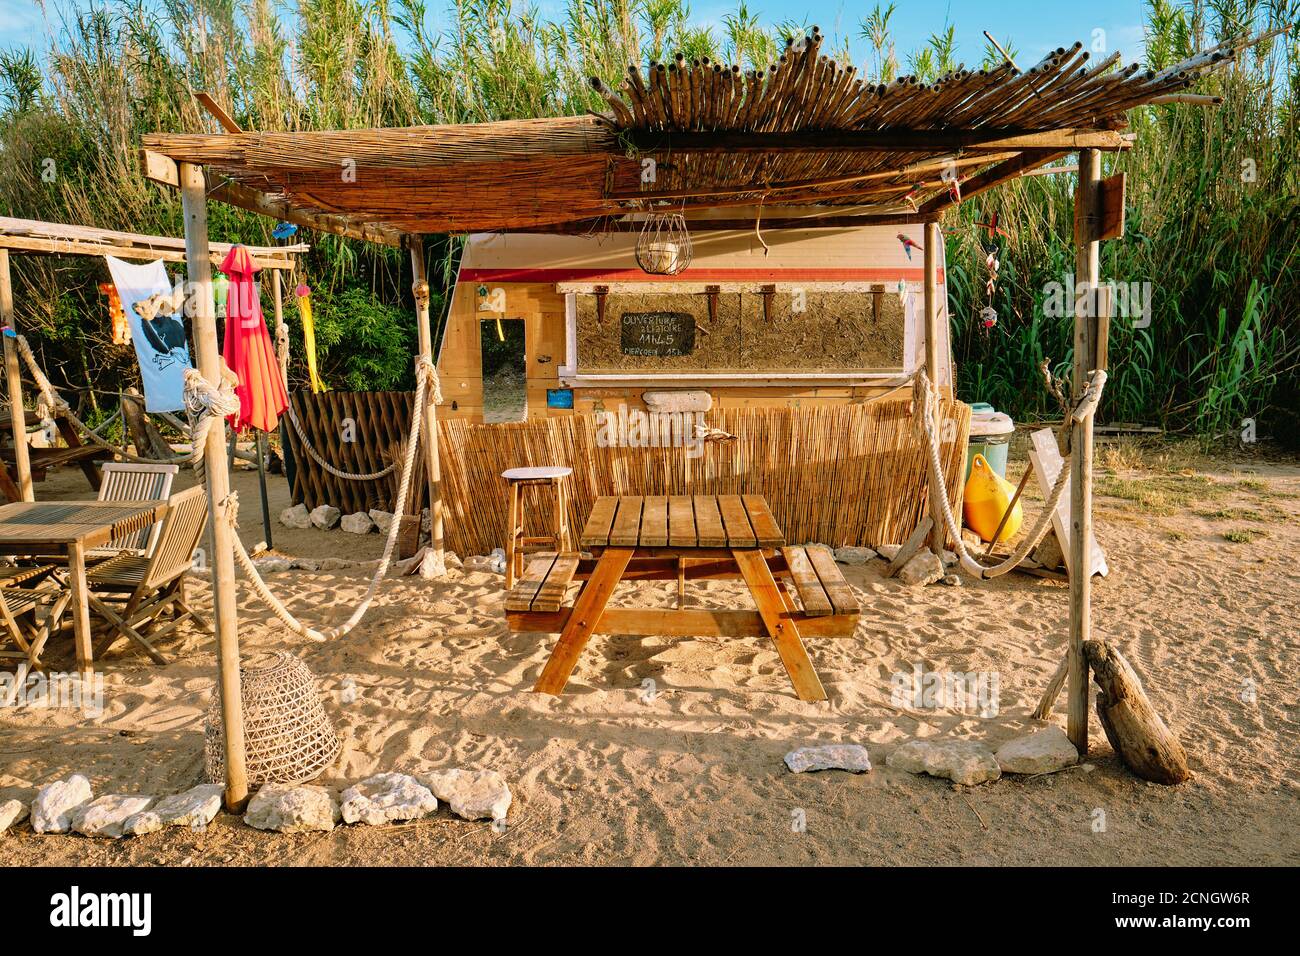 Un rustico summer beach bar cafe shack / cabana composto da materiali riciclati materiali rigenerati in Corsica Francia - Corsica Spiaggia cafe. Foto Stock